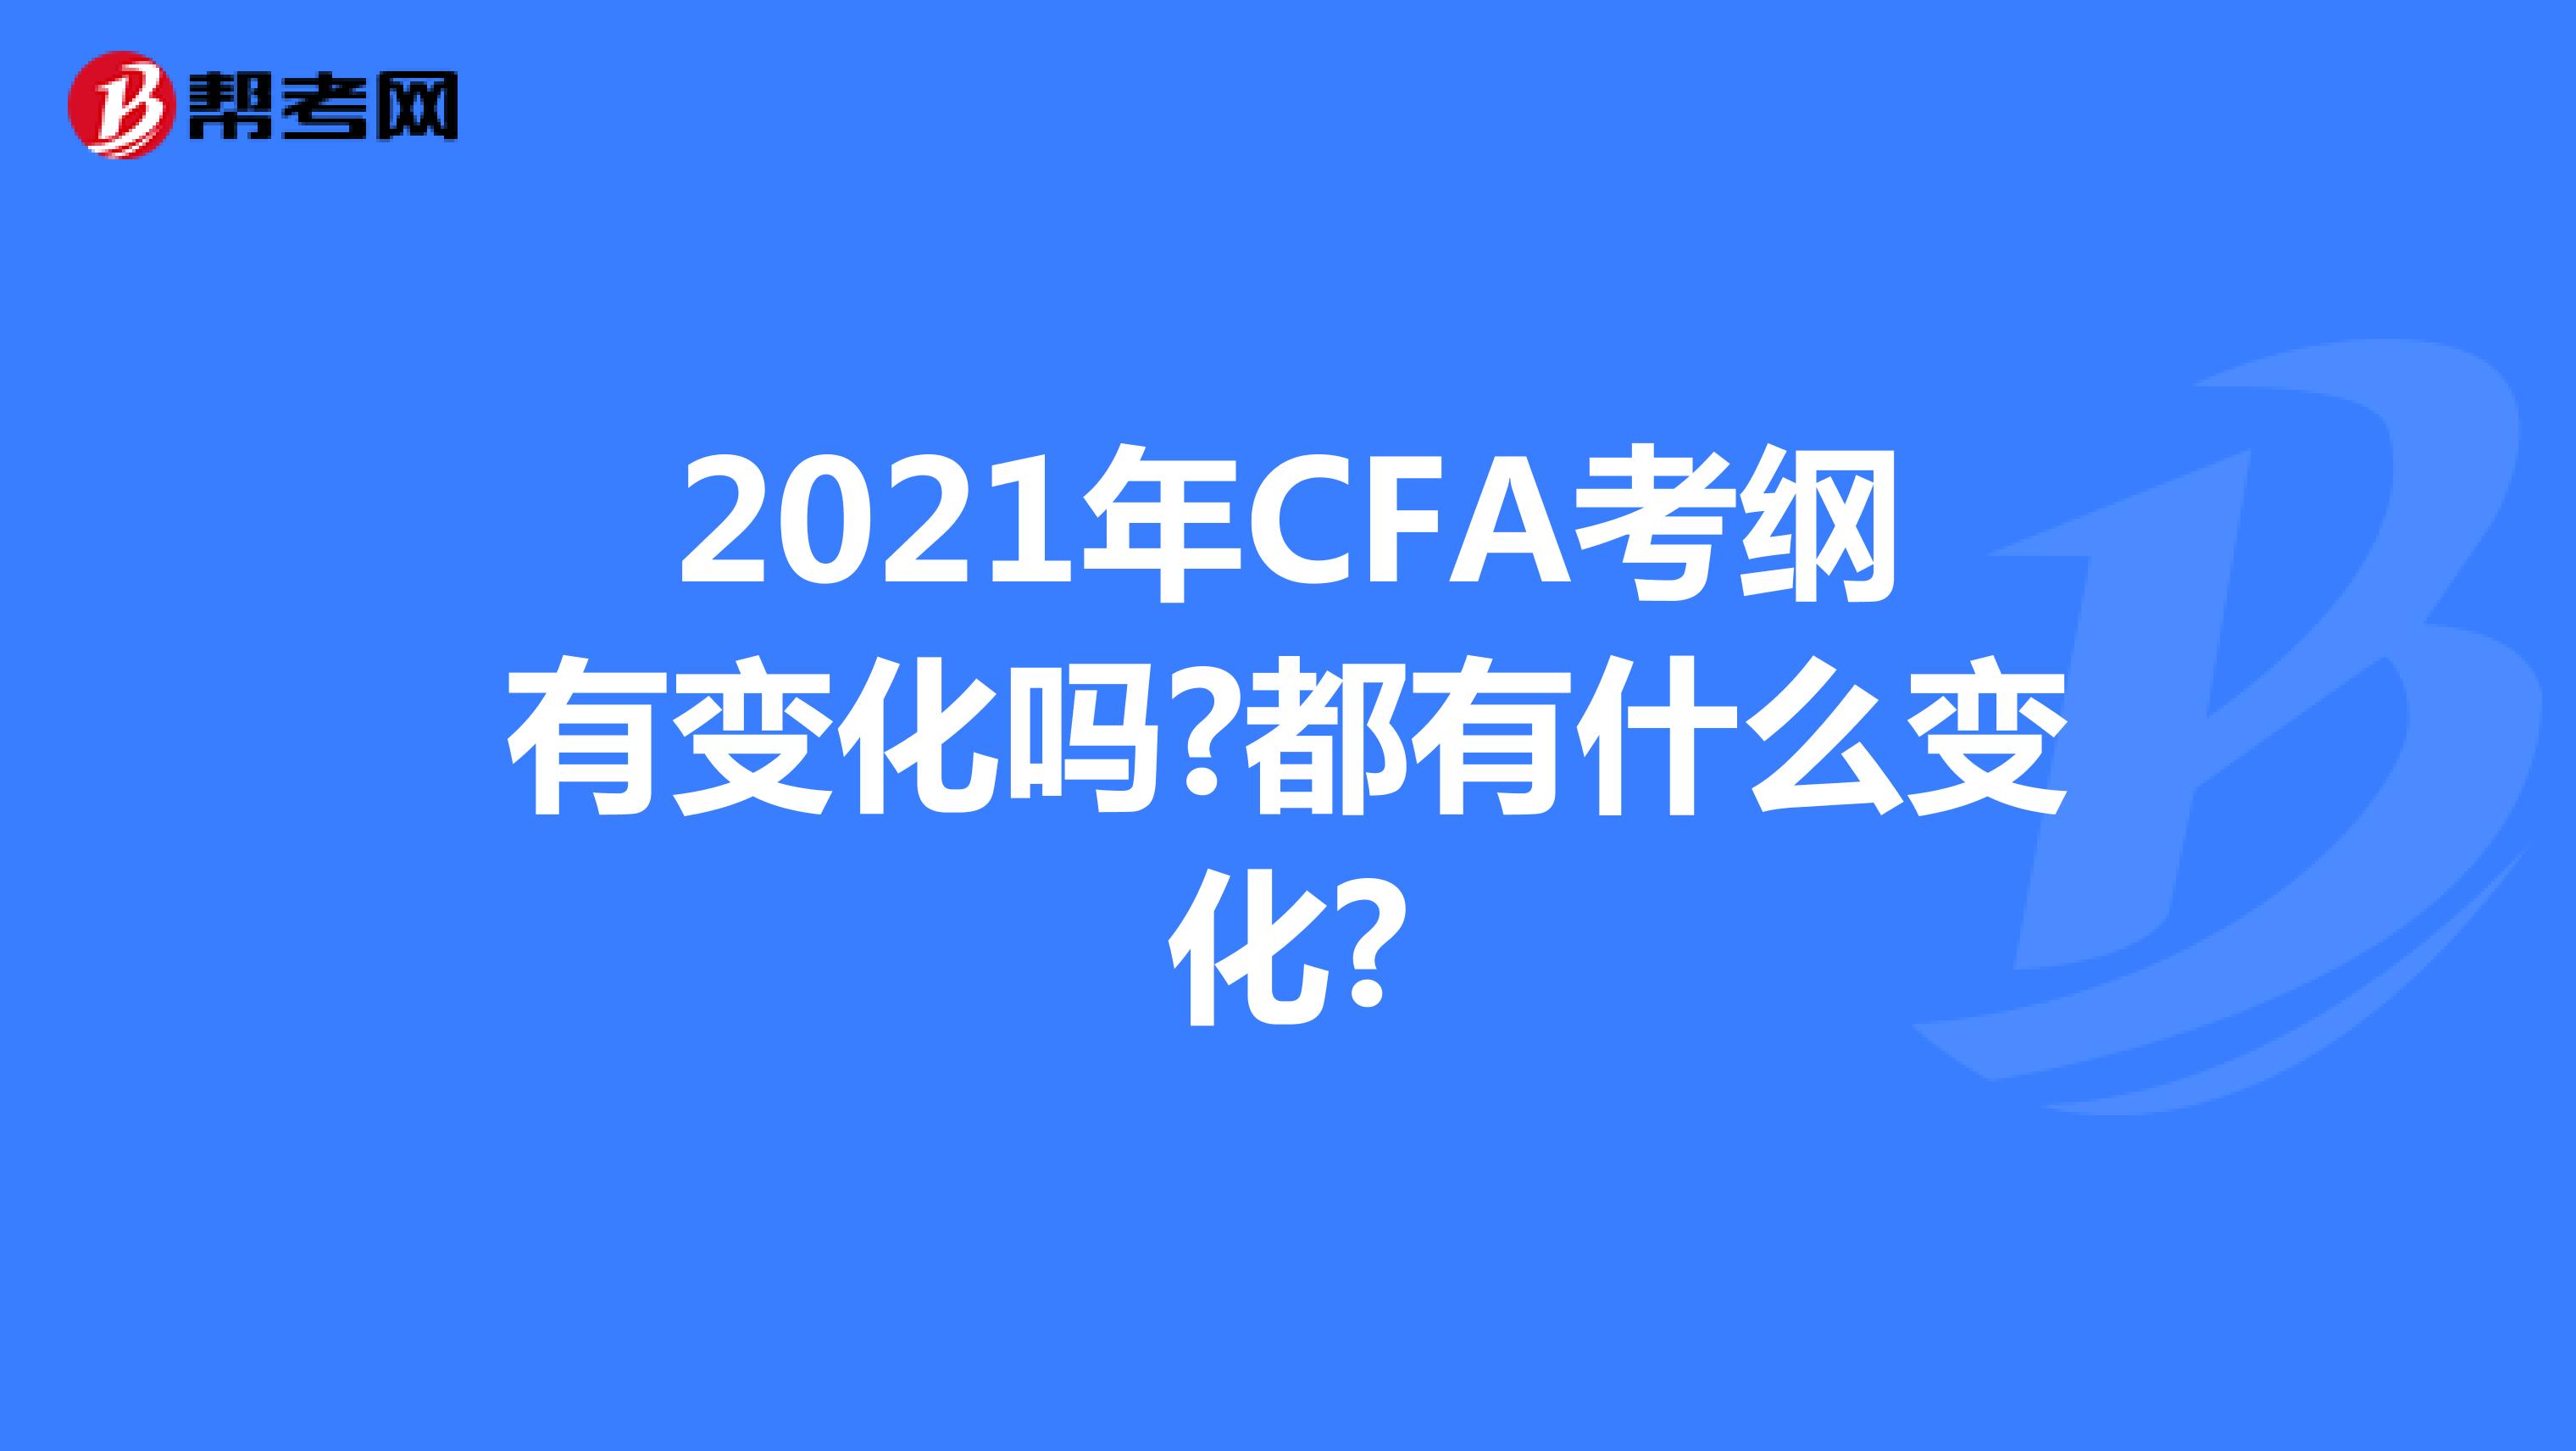 2021年CFA考纲有变化吗?都有什么变化?